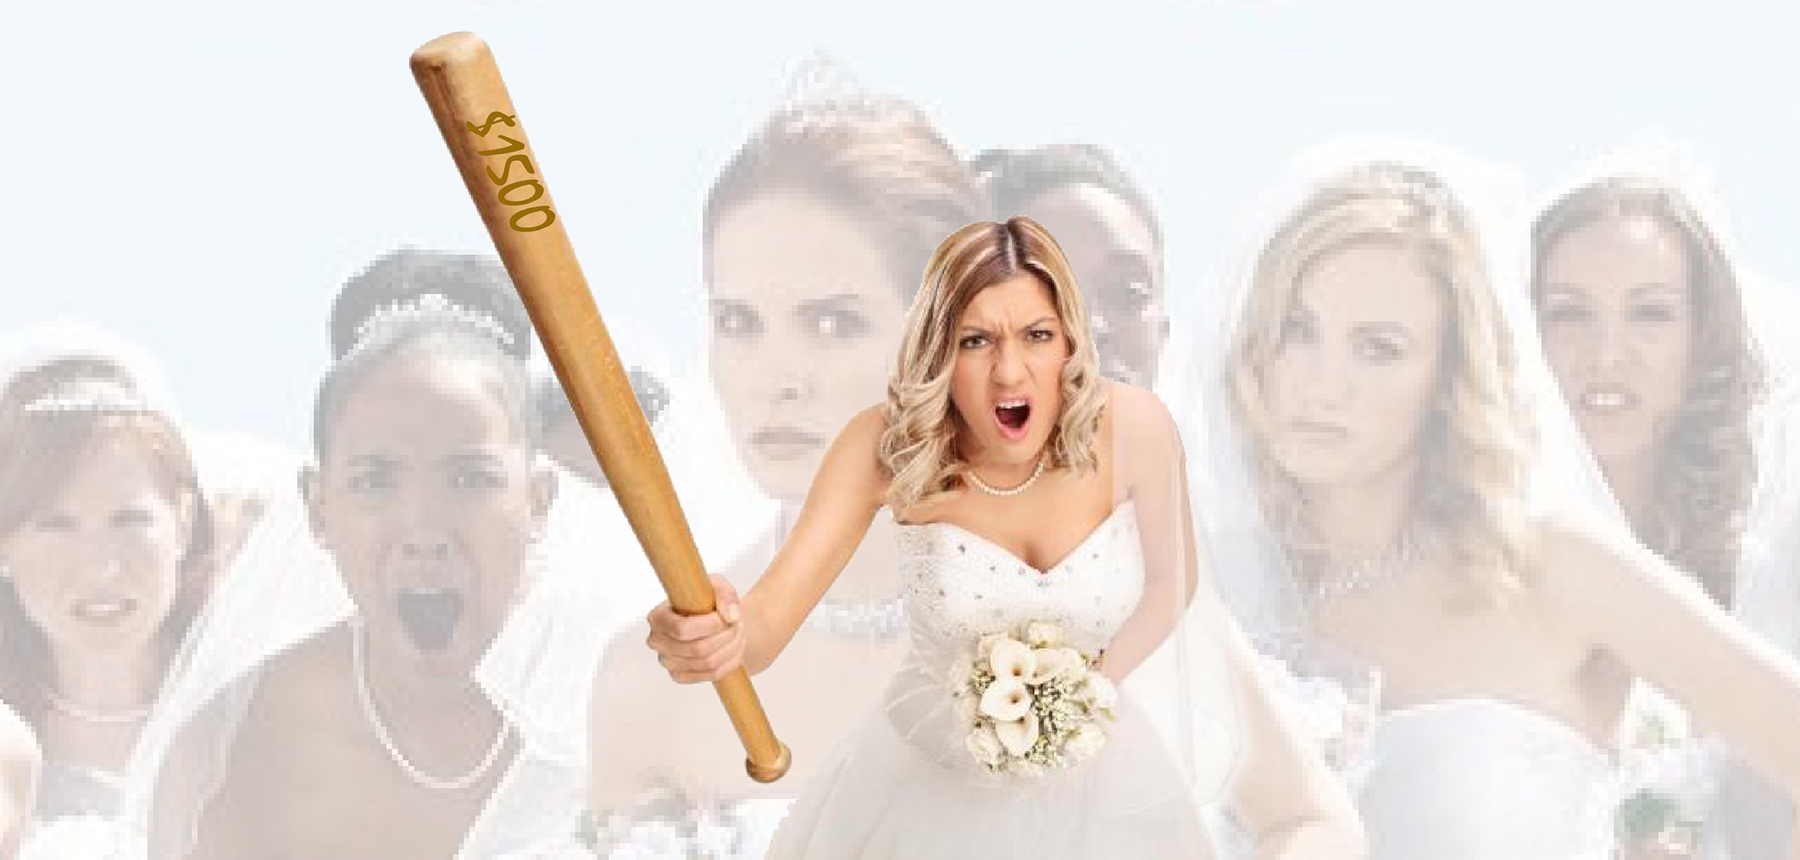 ¡Bridezilla ataca! Novia pretendió cobrar $ 1500 a sus invitados para asistir a su boda